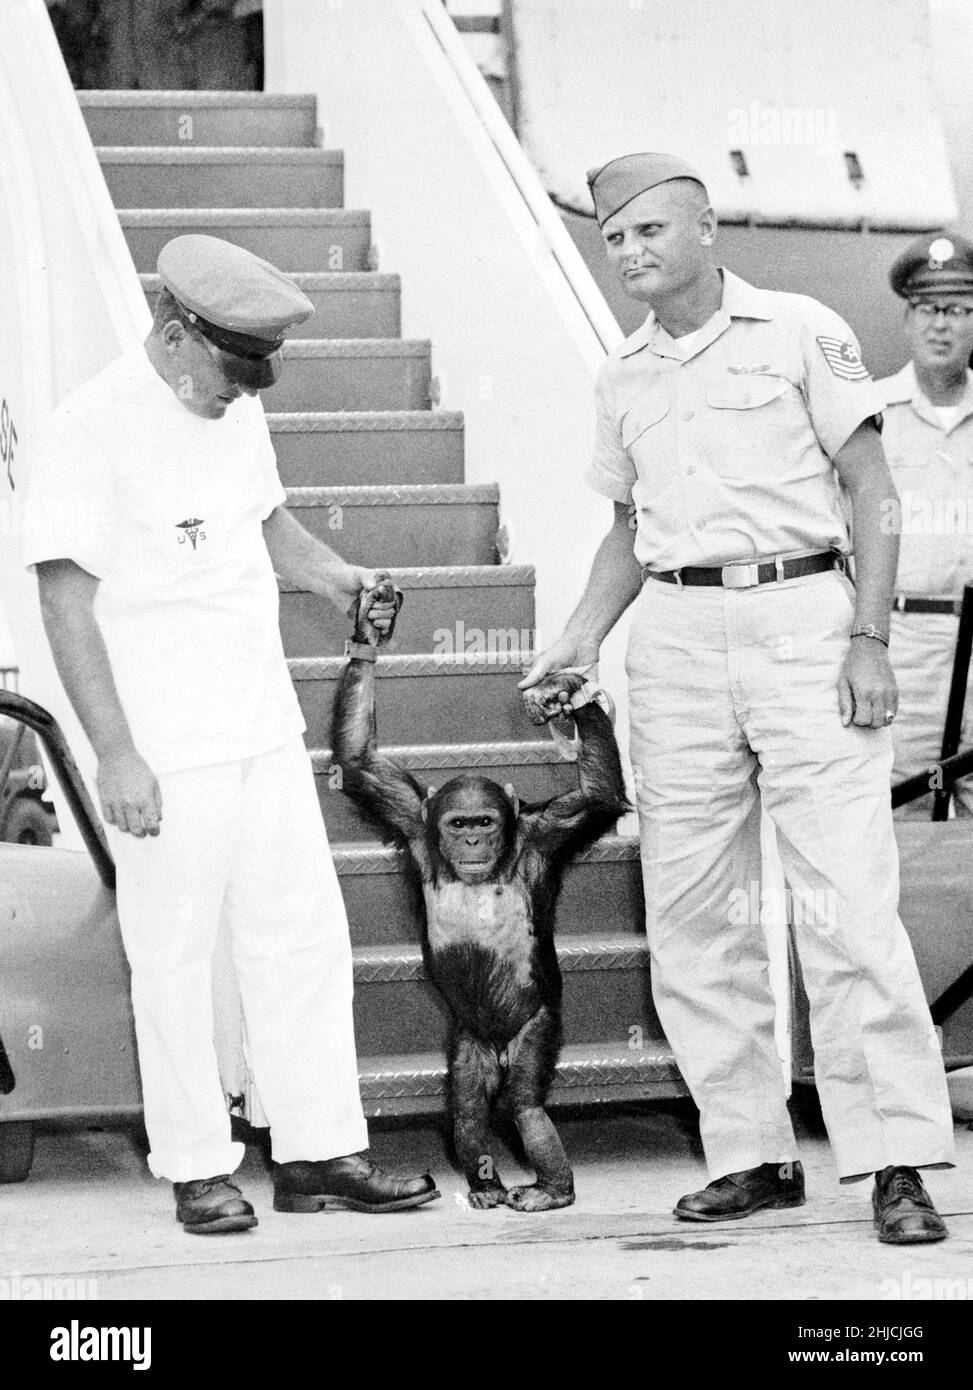 Enos regresa a la Base de la Fuerza Aérea Patrick. Enos (d. El 4 de noviembre de 1962) fue el chimpa de 2nd lanzado al espacio y el primer chimpa en lograr la órbita terrestre. El vuelo de Enos ocurrió el 29 de noviembre de 1961. Su entrenamiento fue más intenso para él que para su predecesor Ham, porque Enos estuvo expuesto a la ingravidez y a mayores gs por períodos de tiempo más largos. Su entrenamiento incluyó instrucción psicomotora y vuelos de avión. Enos murió de disentería relacionada con la shigelosis, que era resistente a los antibióticos conocidos en ese momento. Los patólogos no reportaron síntomas que pudieran ser atribuidos o relacionados con su vuelo espacial. Foto de stock